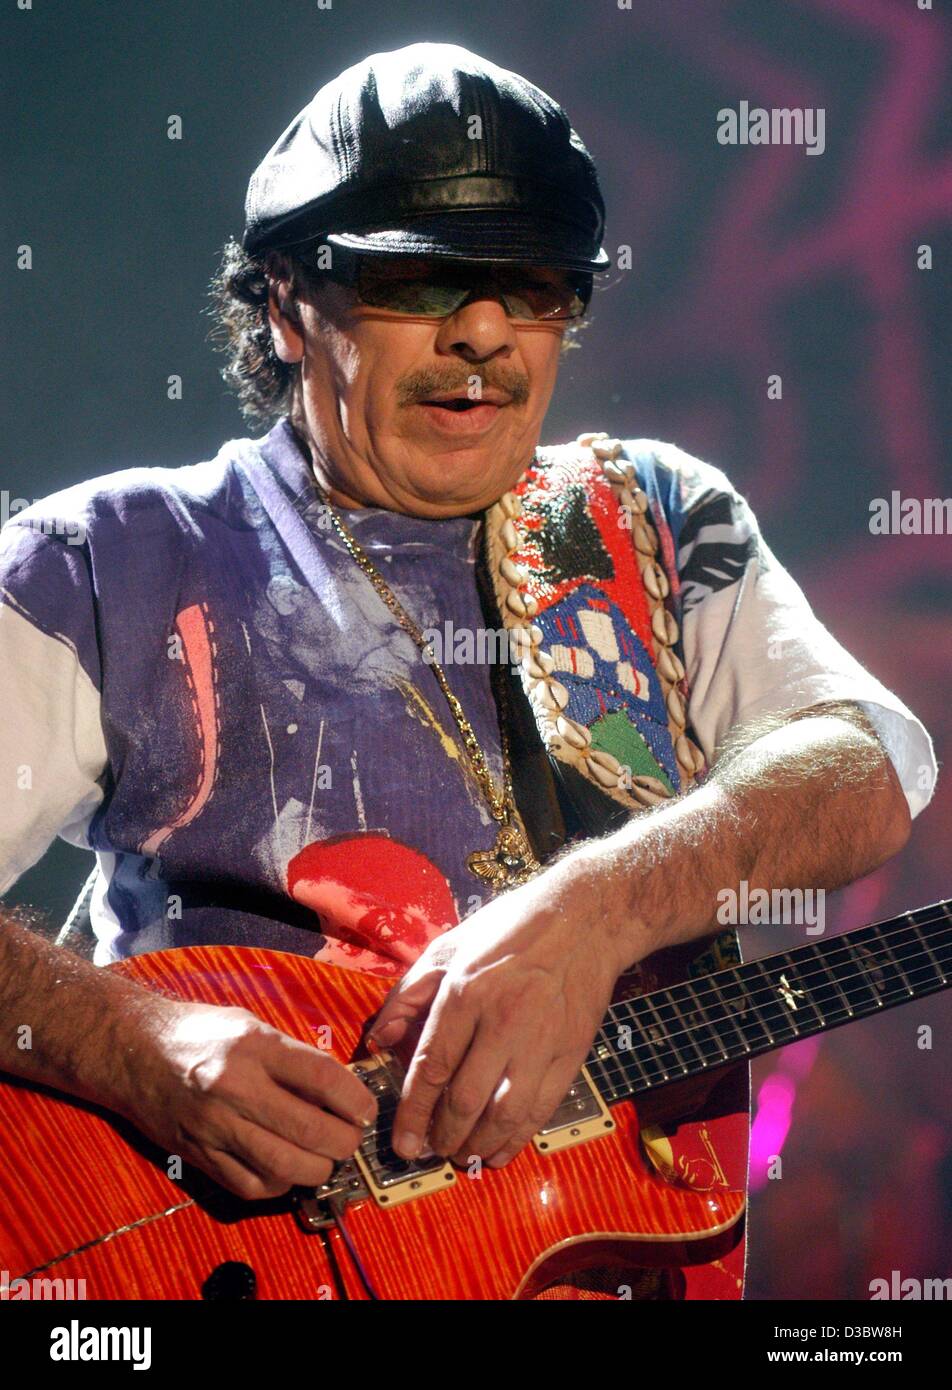 (Dpa) - mexikanische Gitarren-Virtuose Carlos Santana nimmt seine Gitarre während des Konzerts in Hamburg, 2. September 2003. Der 56 Jahre alte Musiker begeistert Tausende von Fans auf das erste Konzert seiner Deutschland-Tournee. Während des Konzertes spielte er nicht nur seine bekannten Hits, aber auch Lieder von seinem aktuellen album Stockfoto